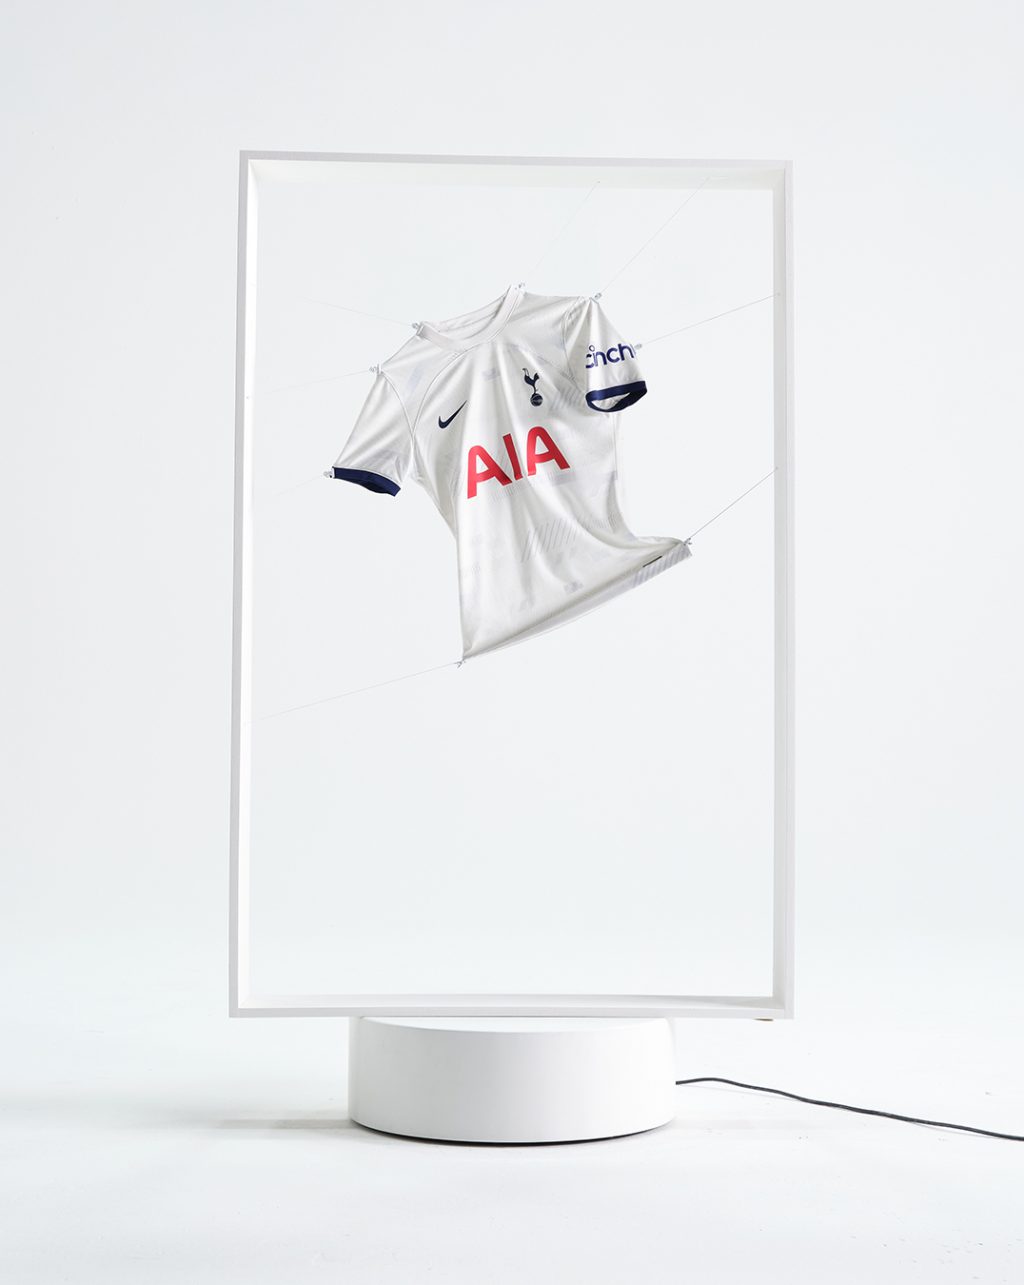 Tottenham Hotspurs home kit shirt in white frame on white studio background